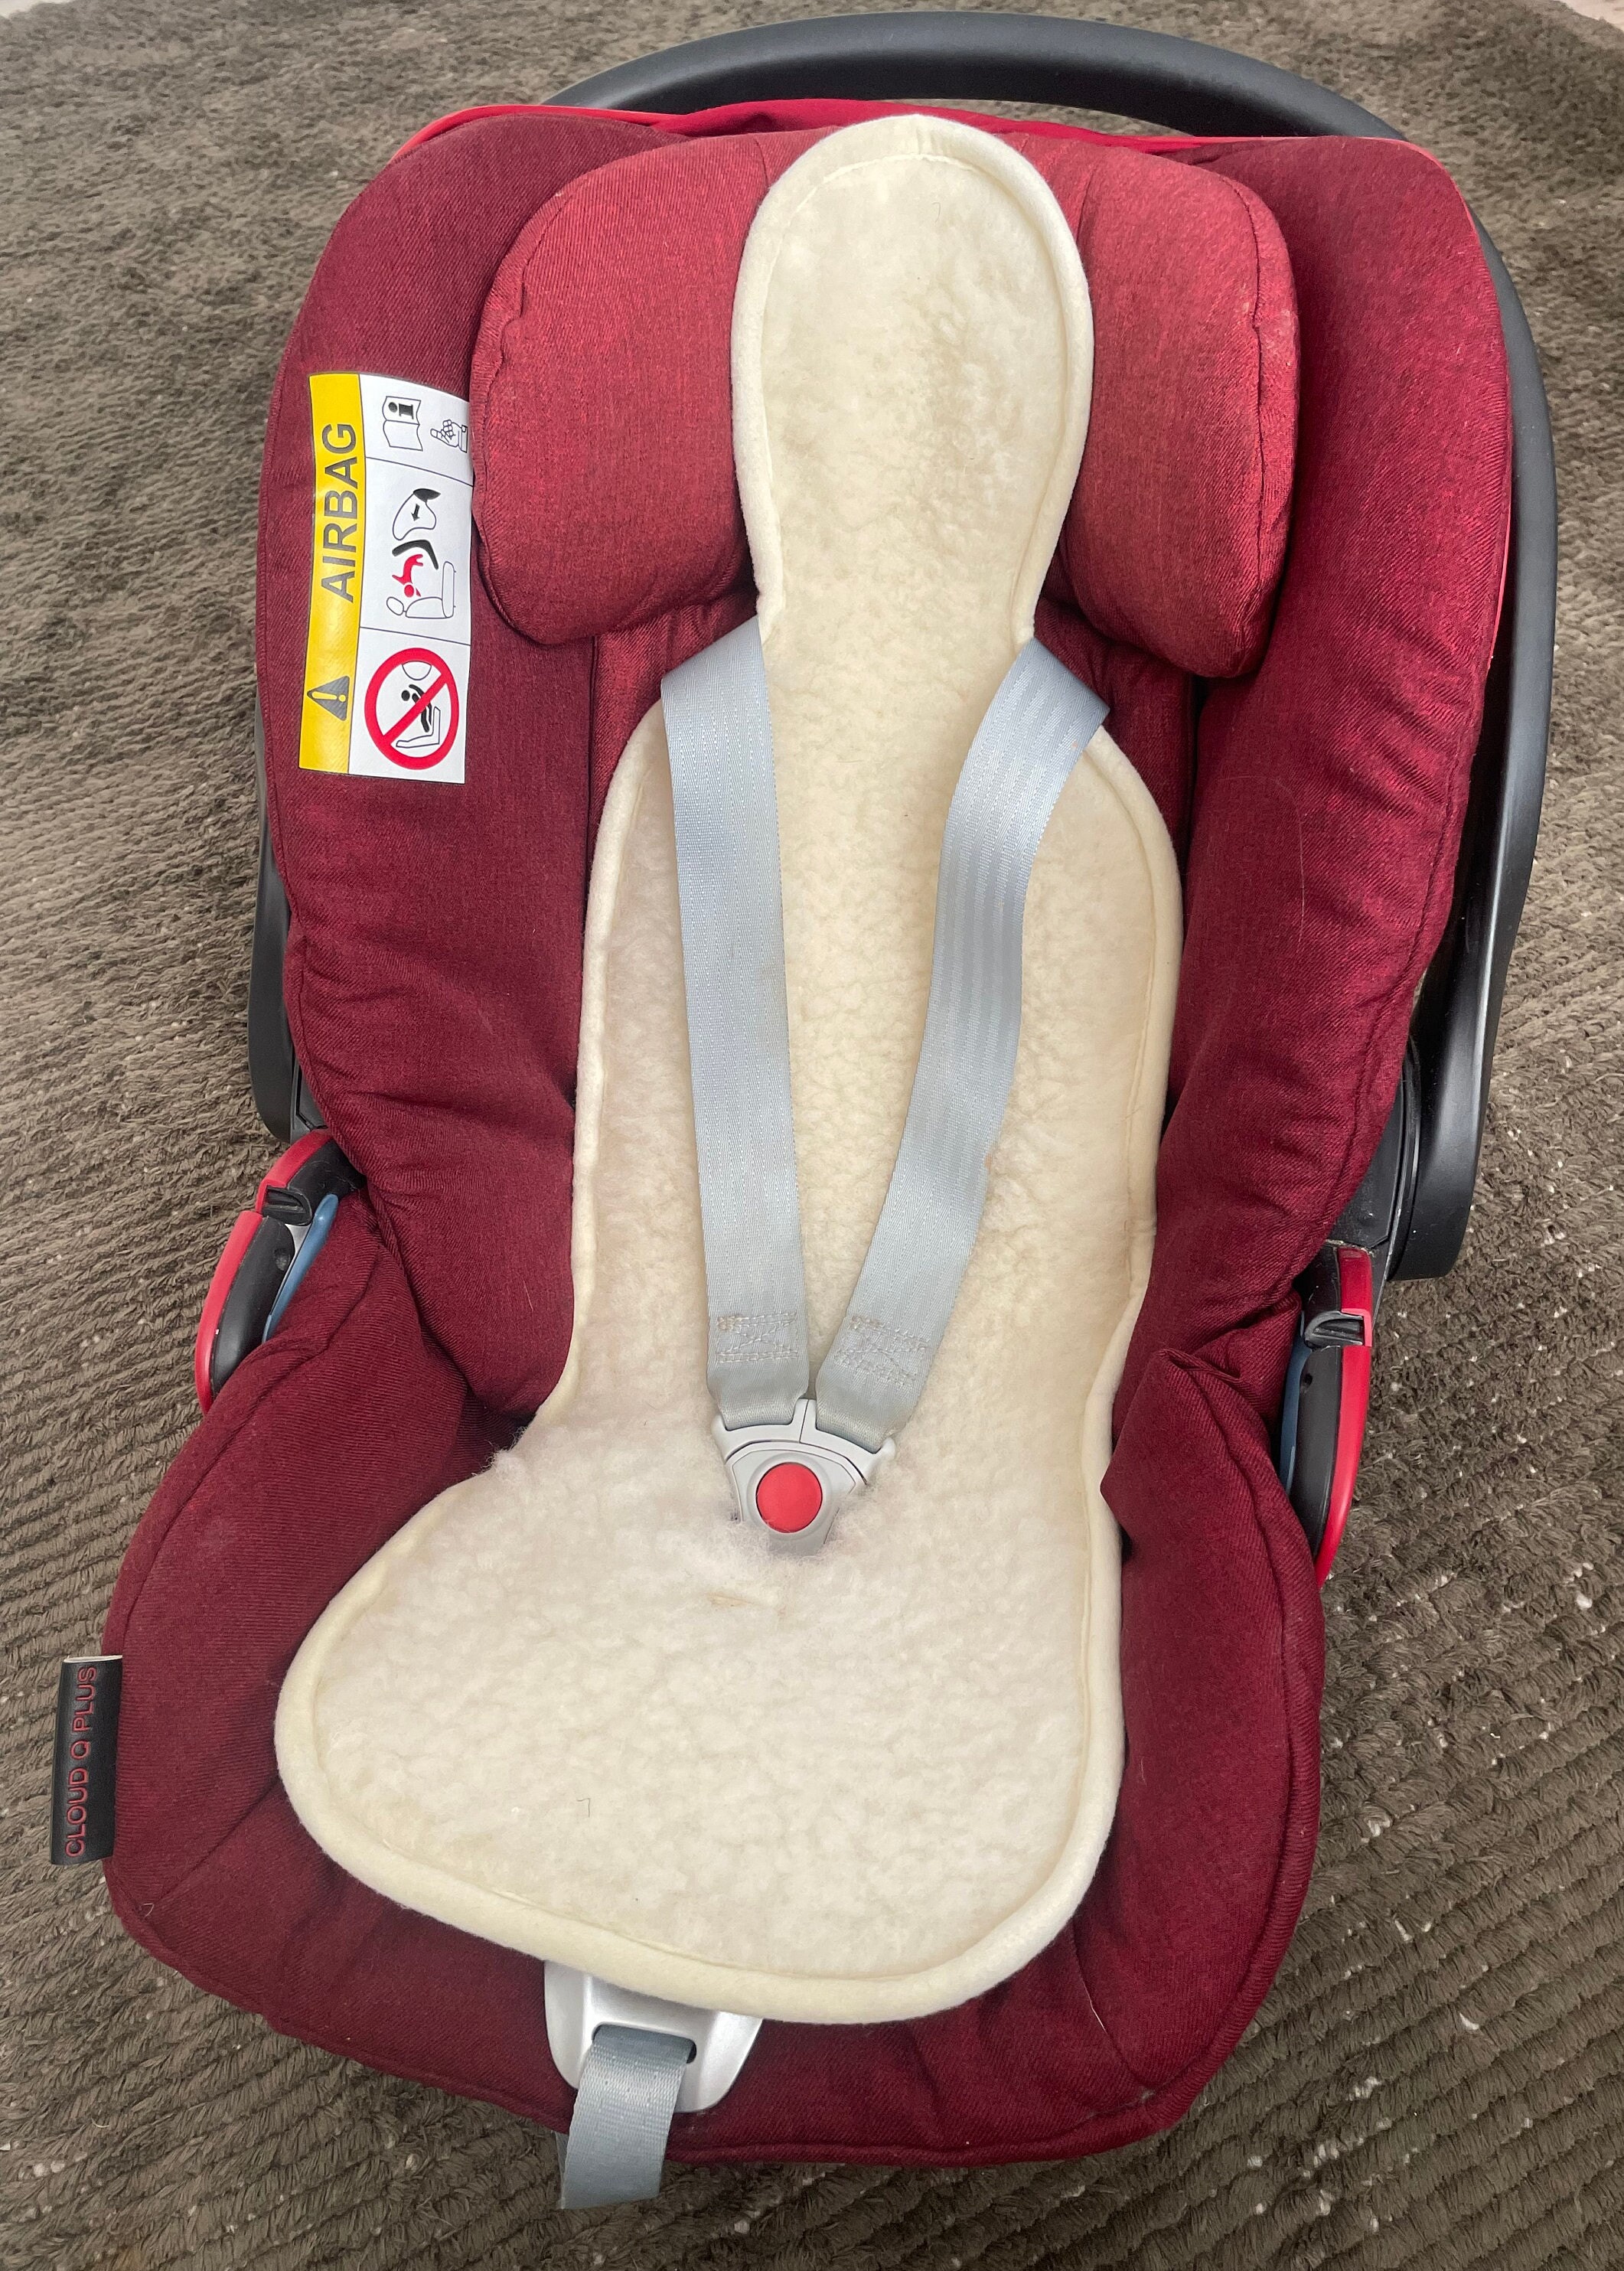 Housse de protection coque et cosy bébé pour la voiture : adbb